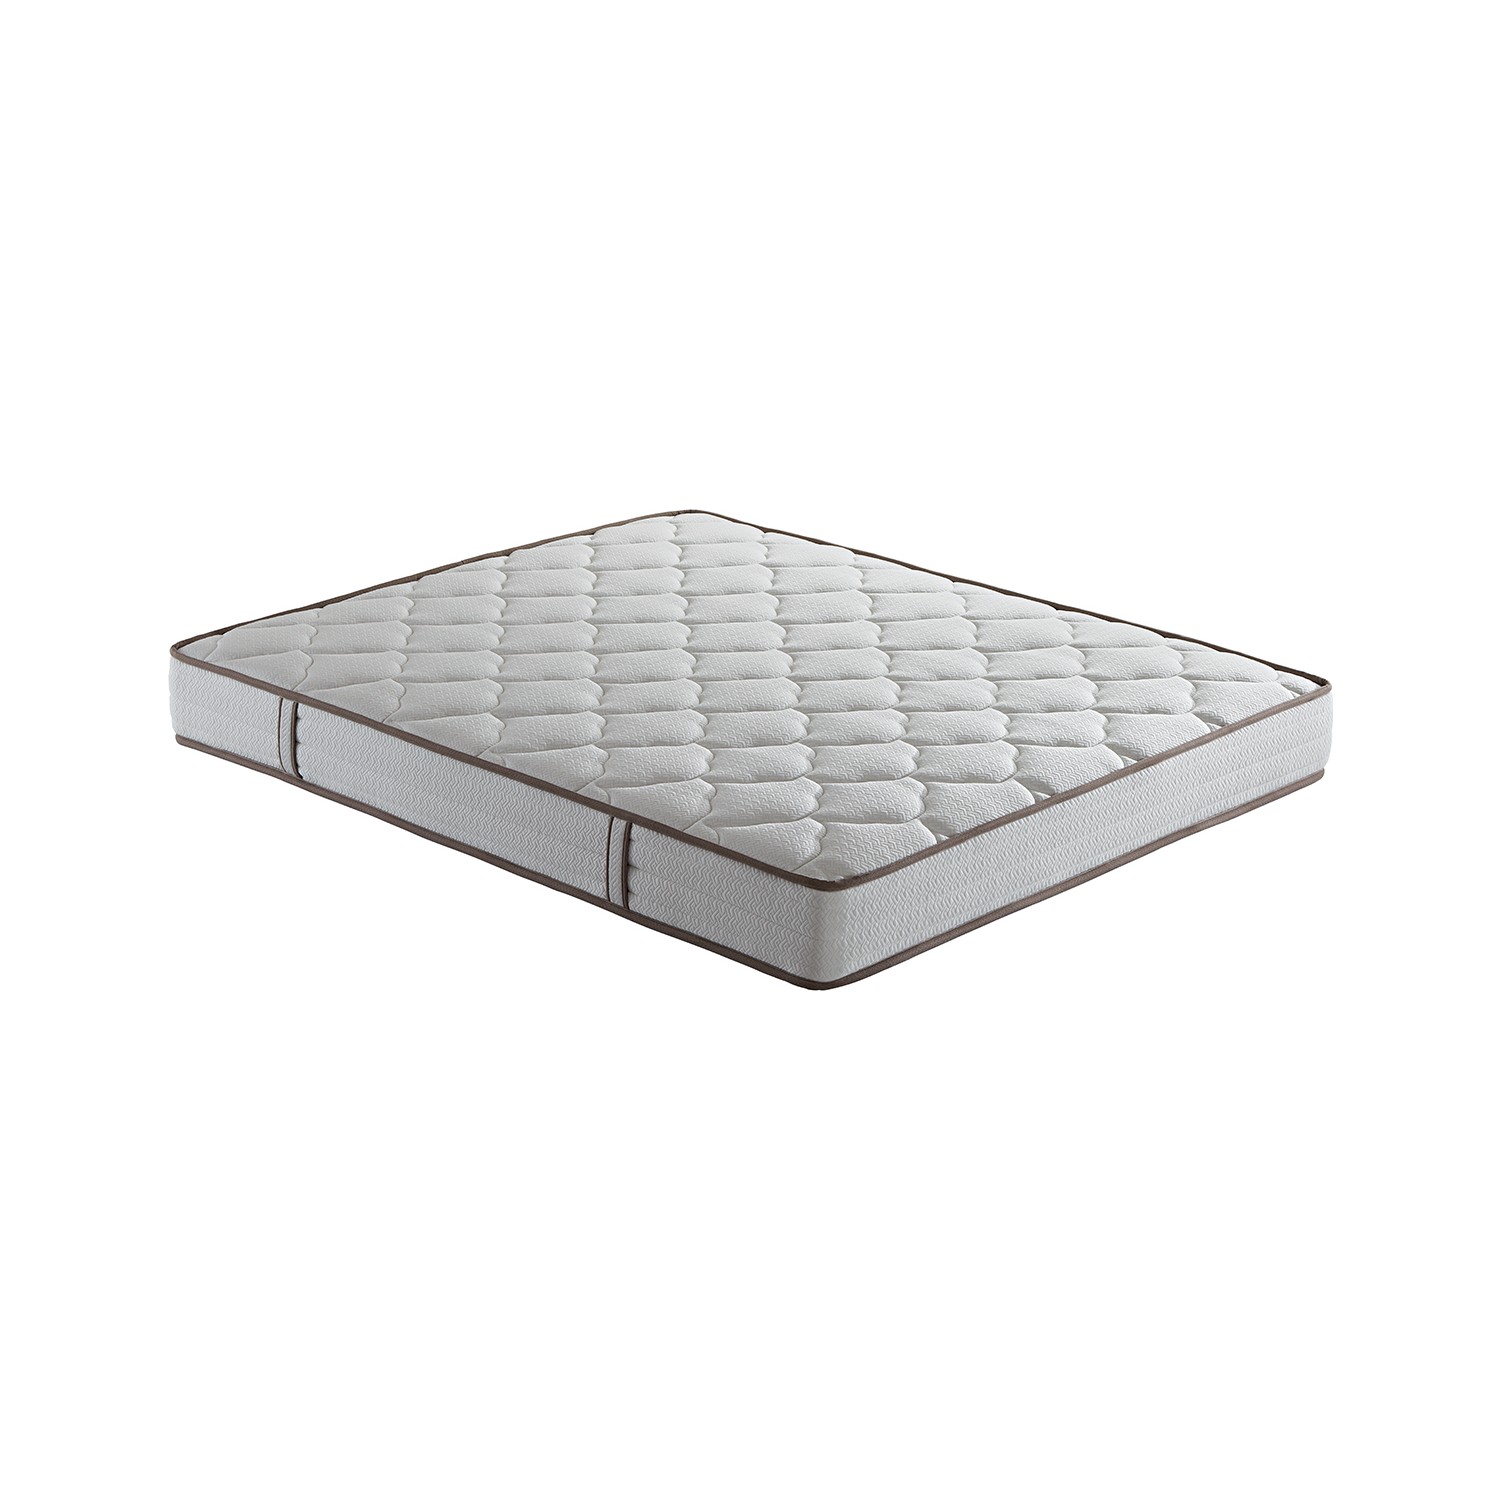 Yataş Bedding STAR DHT Yaylı Seri Yatak (Tek Kişilik Fiyatı